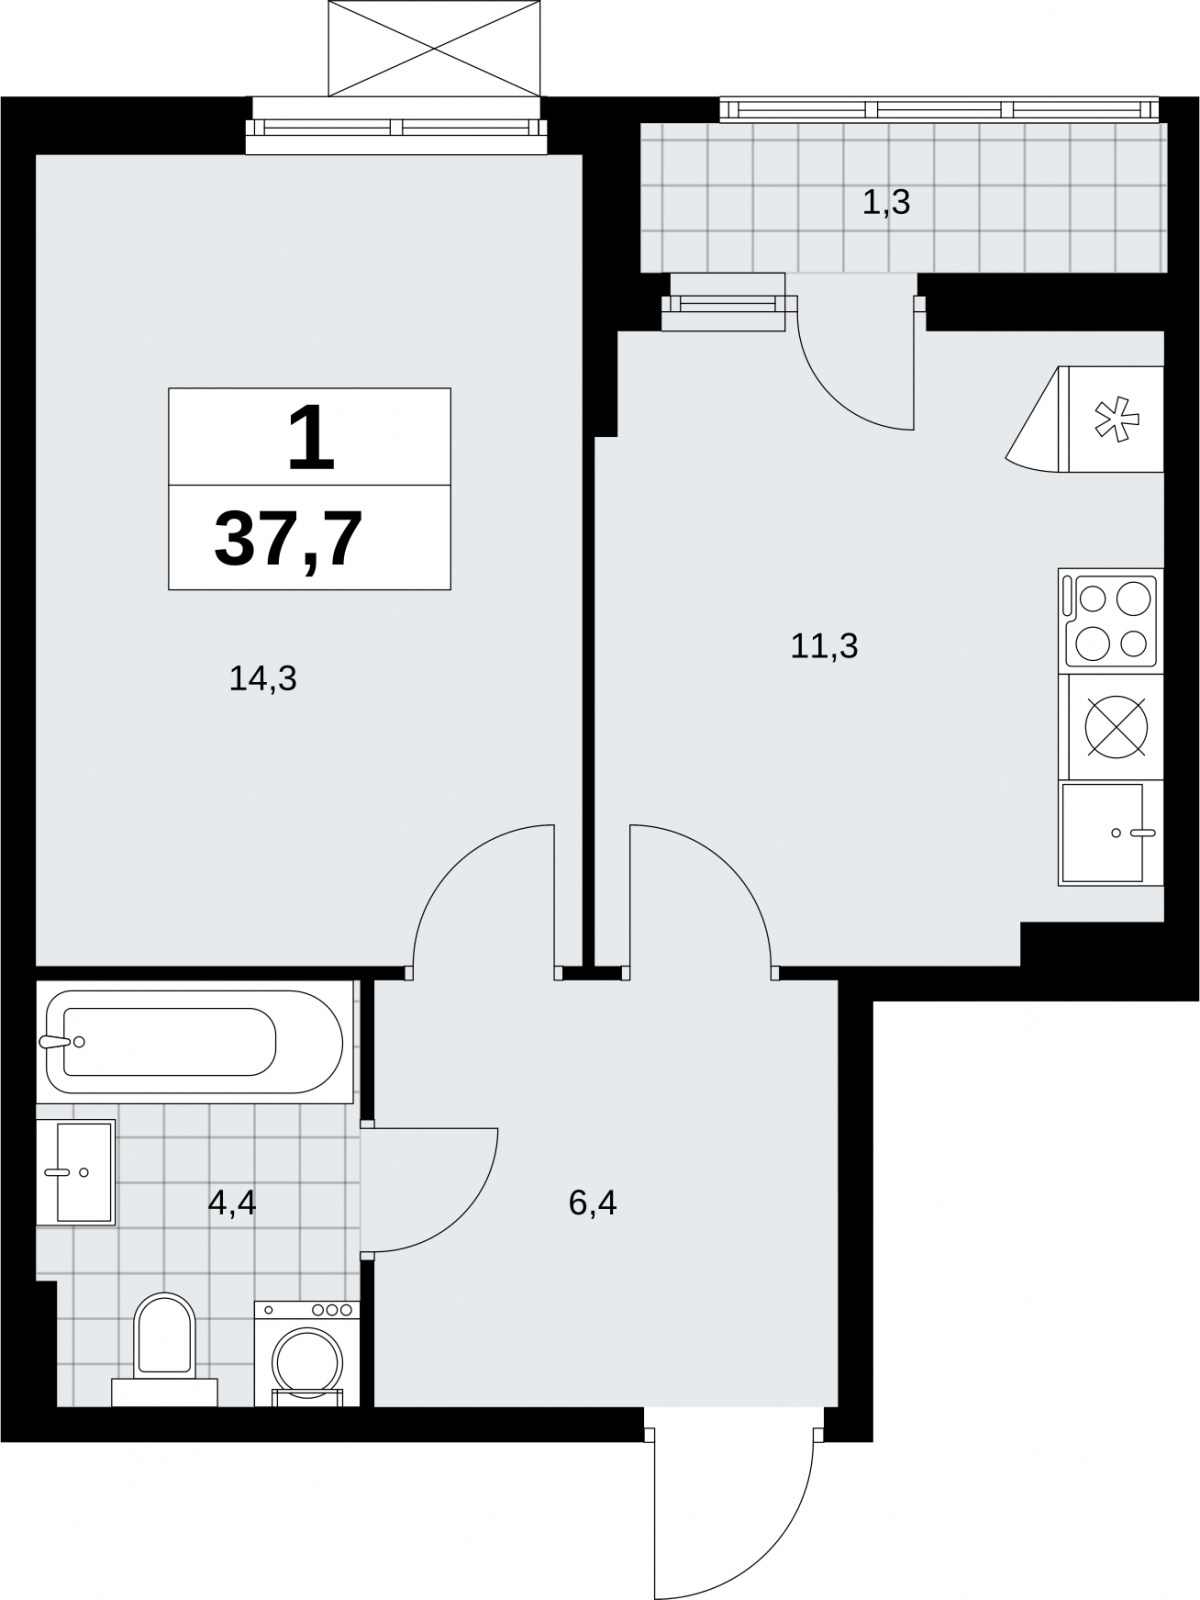 Продается 1-комнатная квартира в новом жилом комплексе, рядом с метро